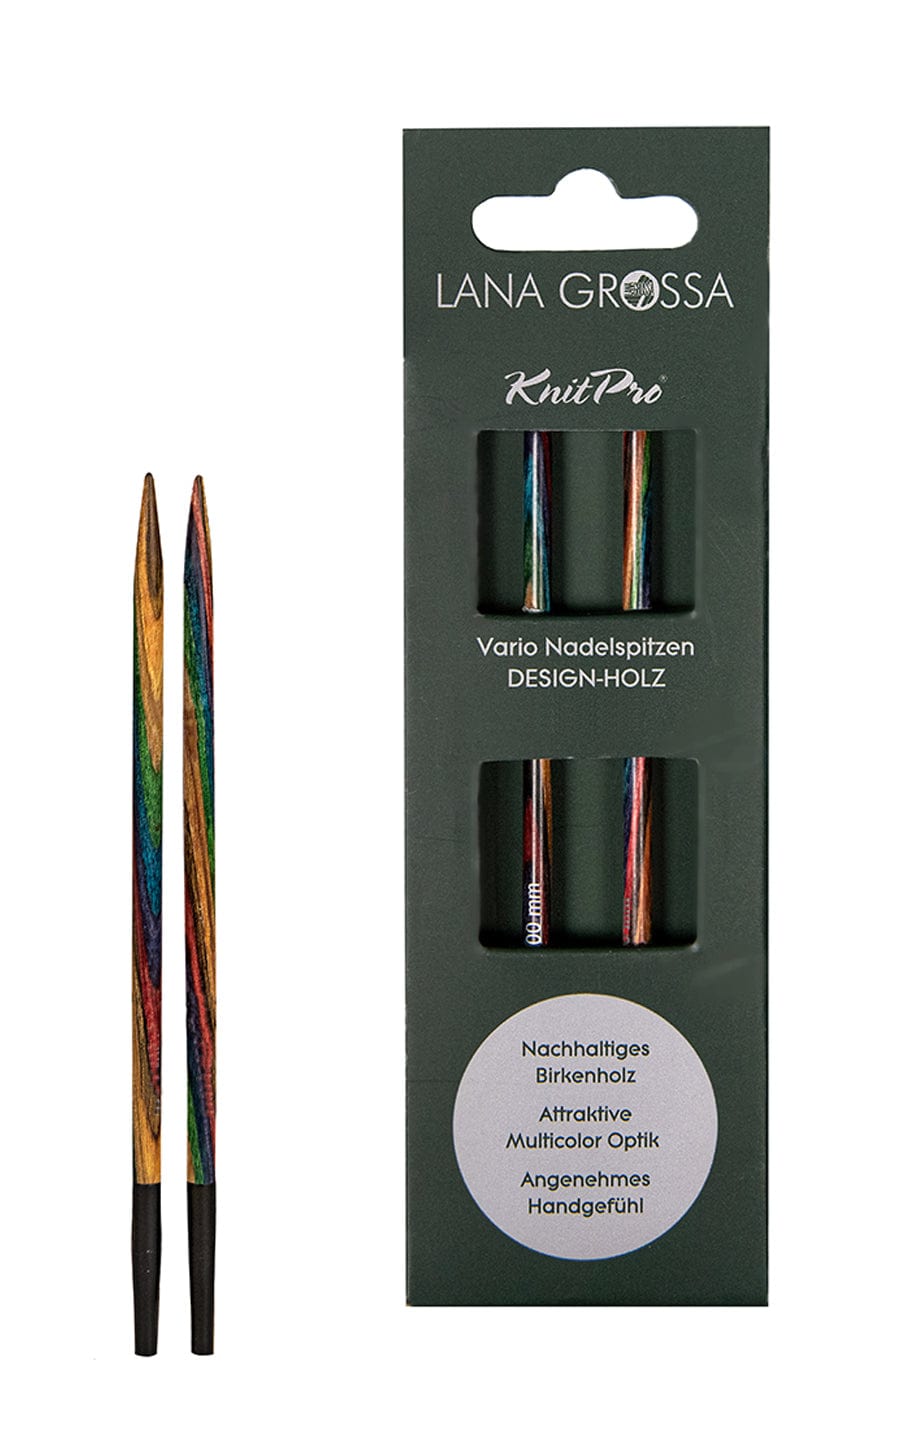 Kurze 4,0 mm Nadelspitze Vario aus Holz - neue Verpackung von LANA GROSSA jetzt online kaufen bei OONIQUE